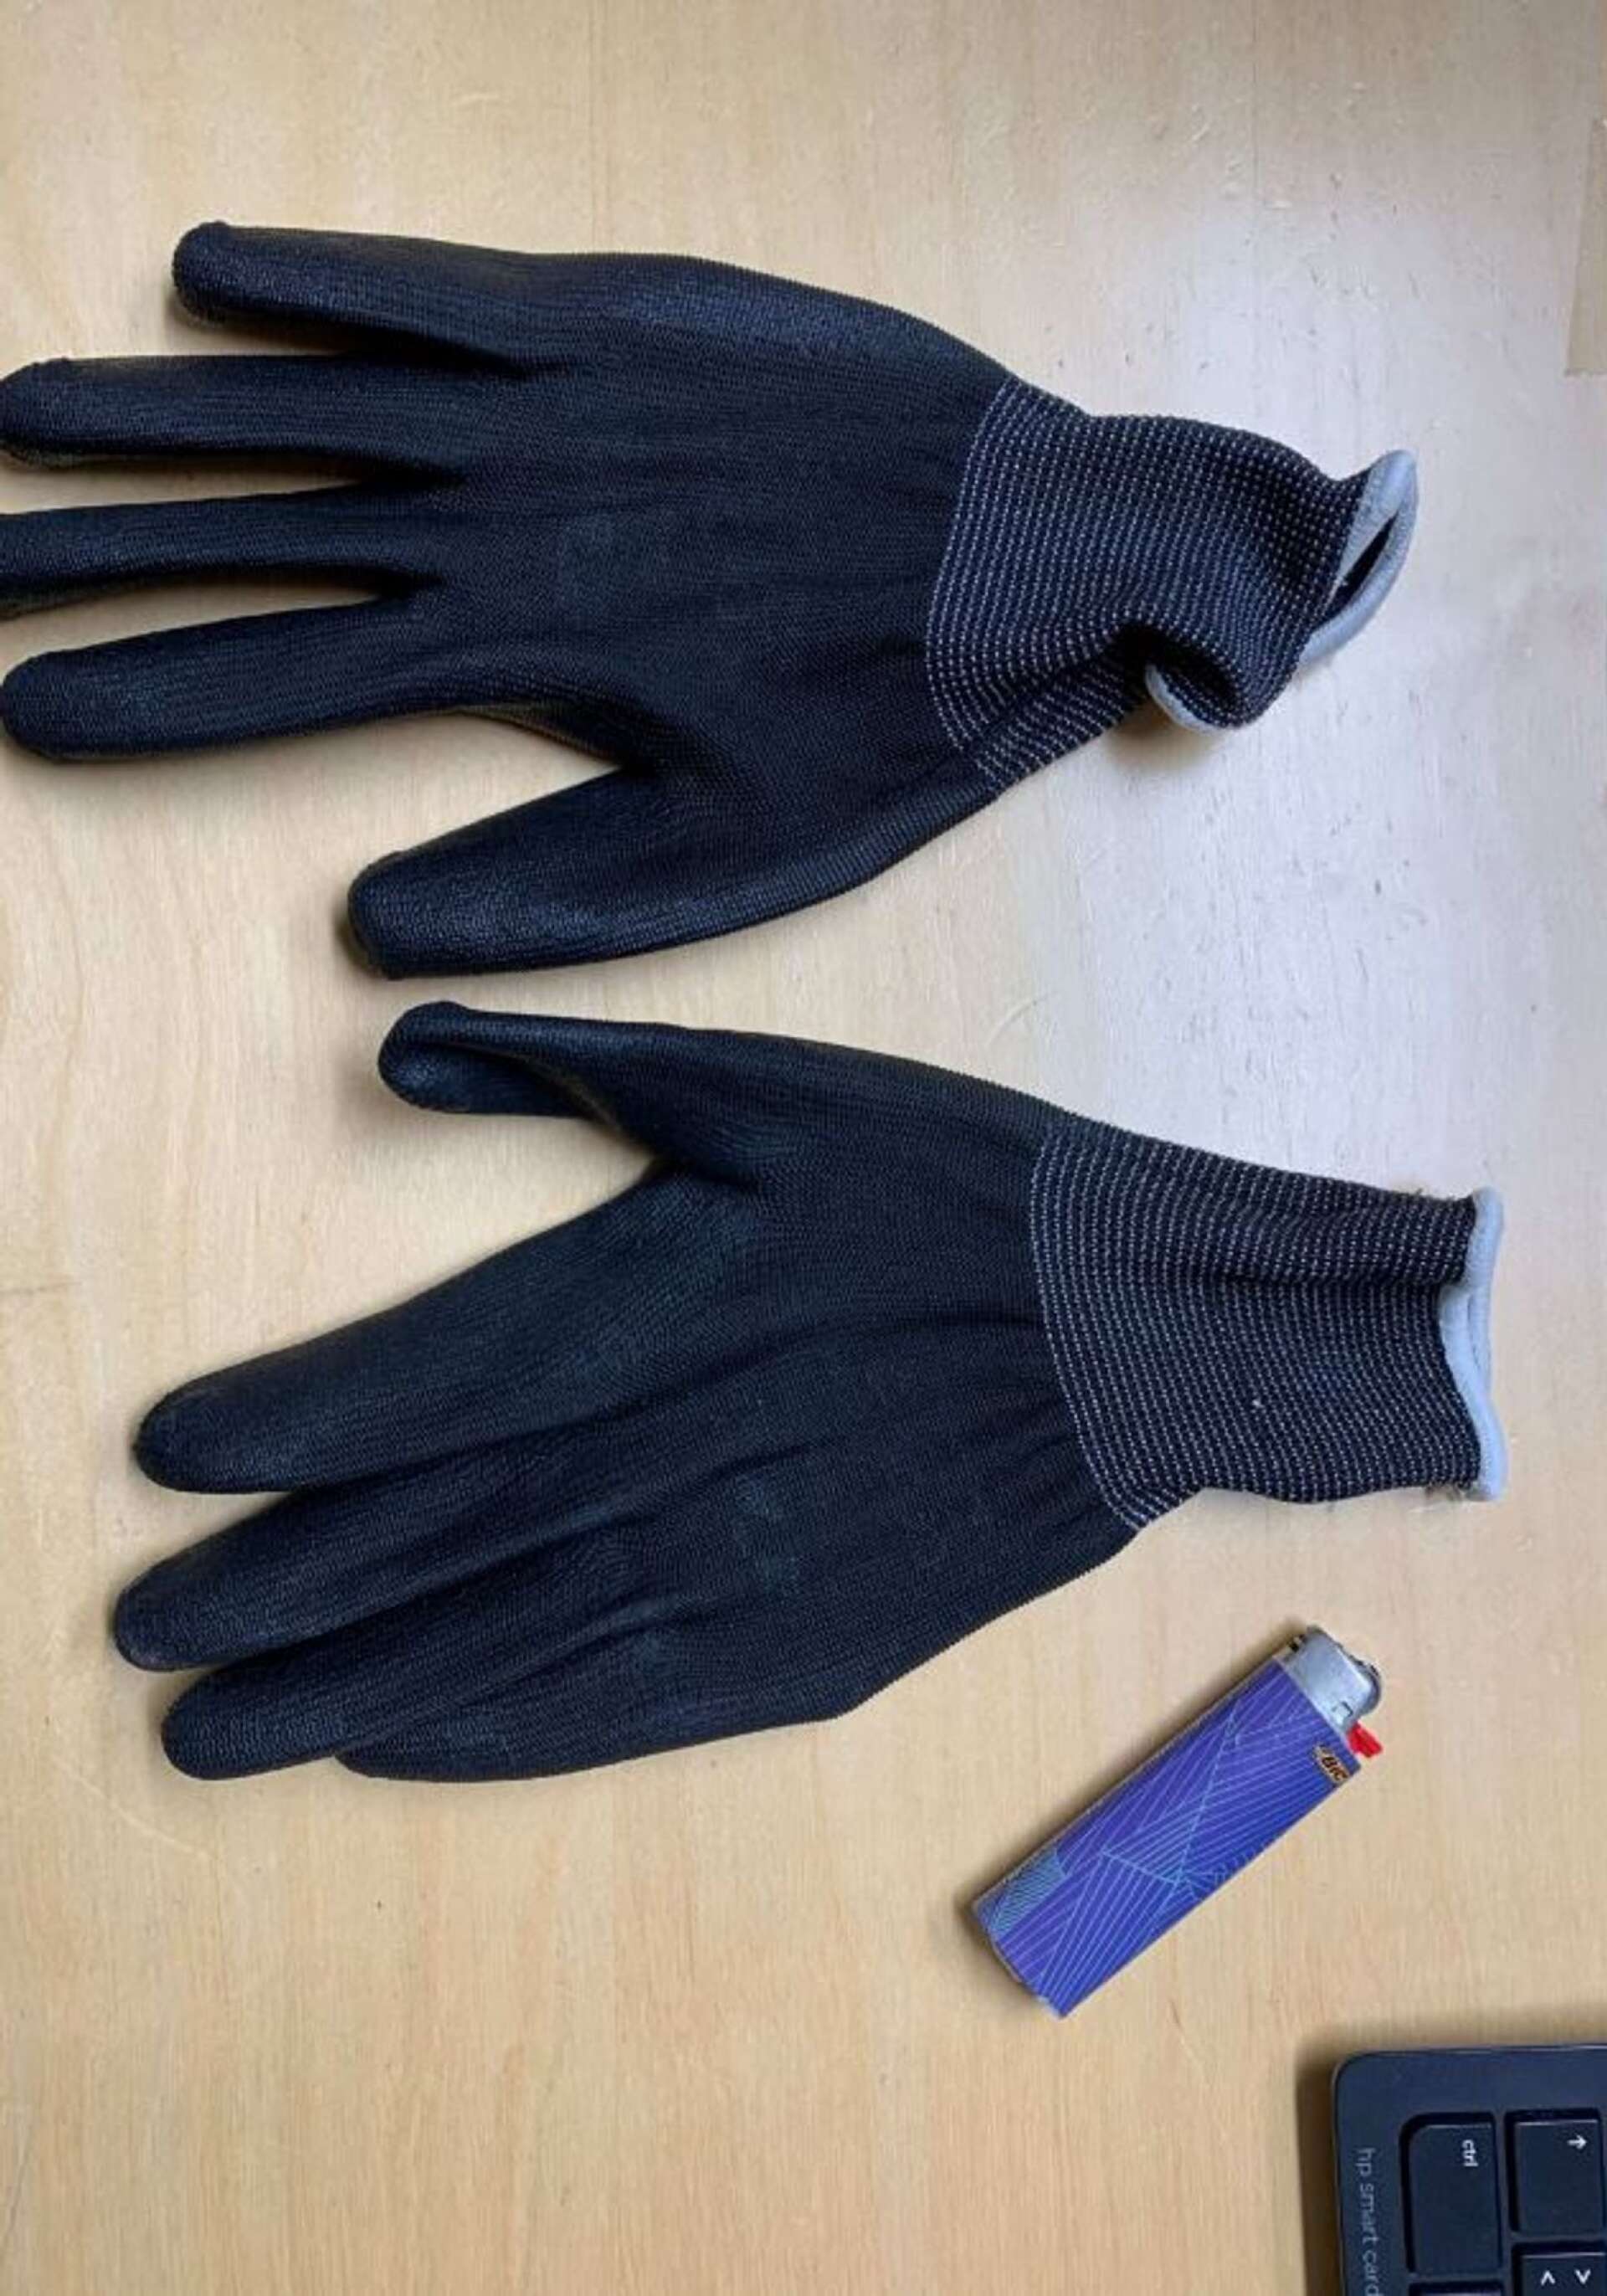 Handskar och tändare som 19-åringen hade på sig under natten.